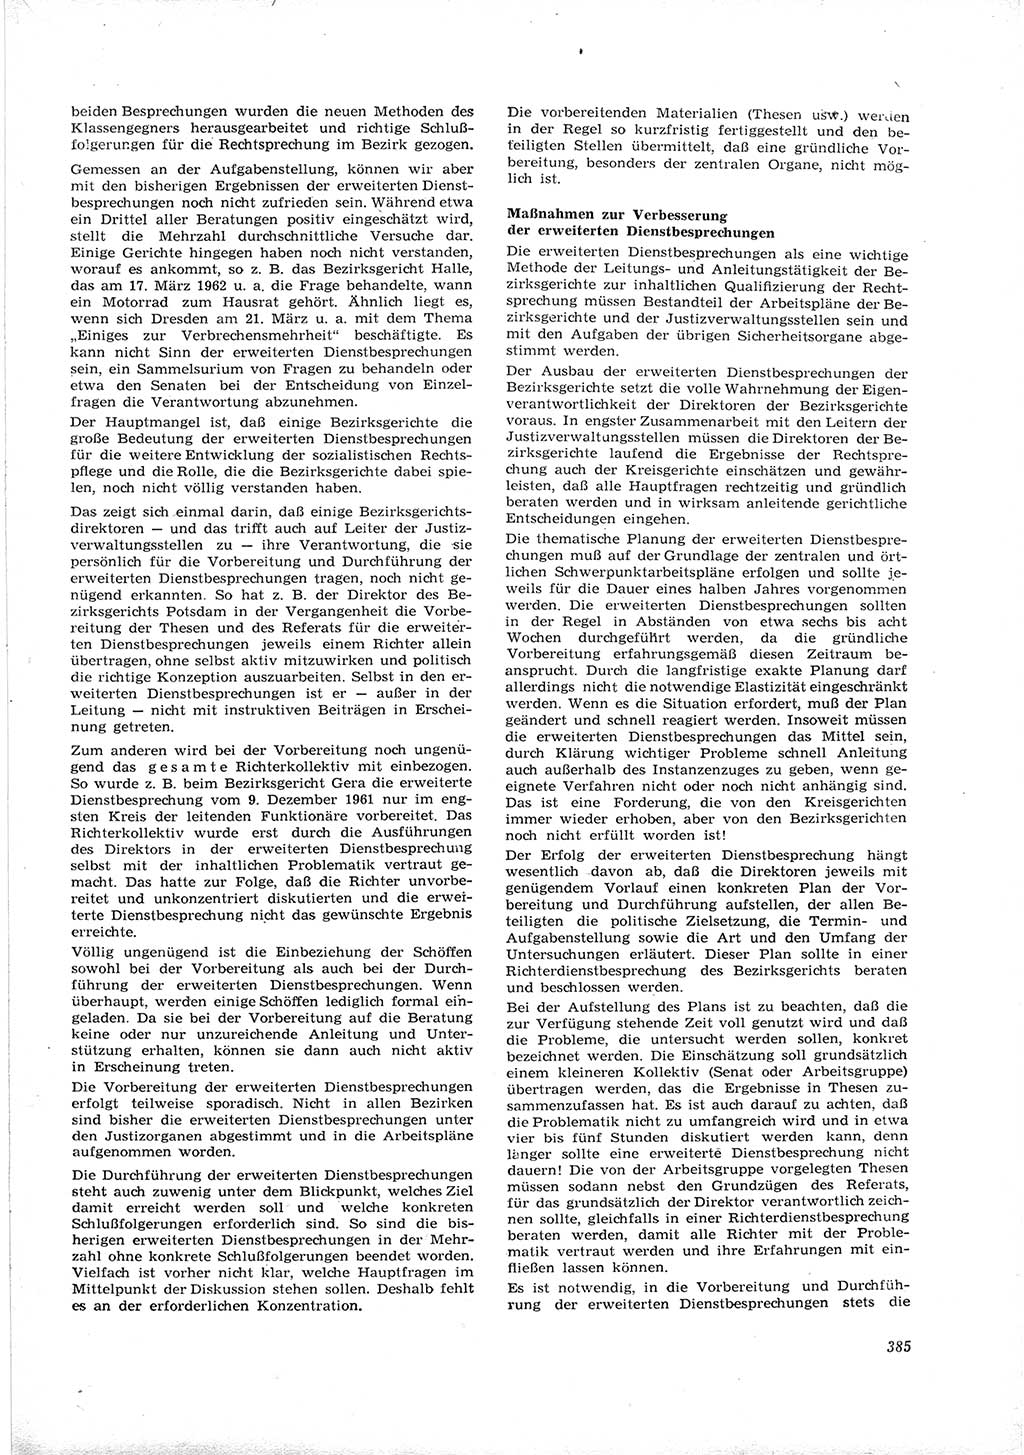 Neue Justiz (NJ), Zeitschrift für Recht und Rechtswissenschaft [Deutsche Demokratische Republik (DDR)], 16. Jahrgang 1962, Seite 385 (NJ DDR 1962, S. 385)